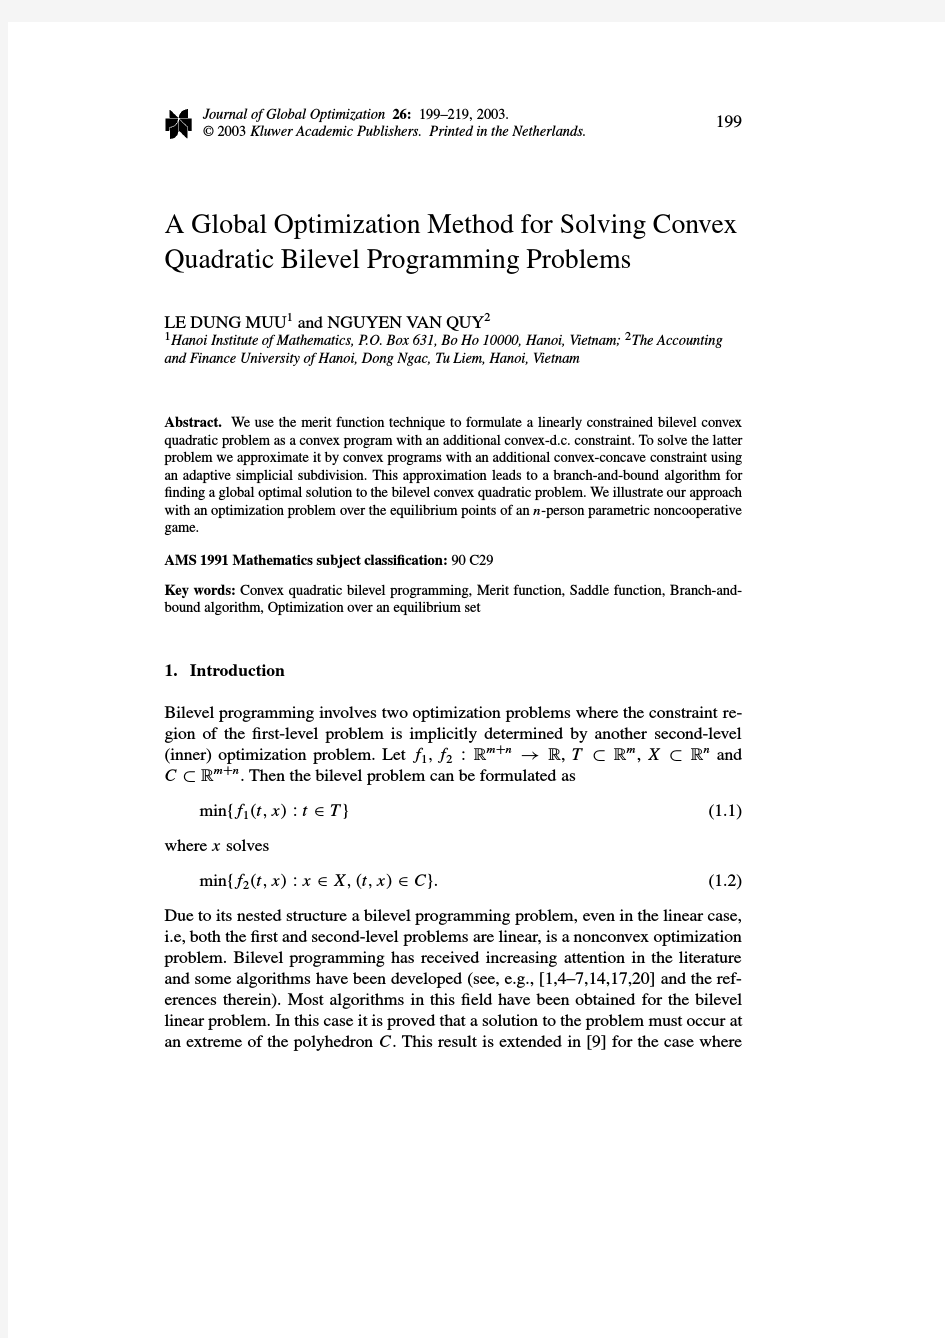 双层凸优化问题A Global Optimization Method for Solving Convex